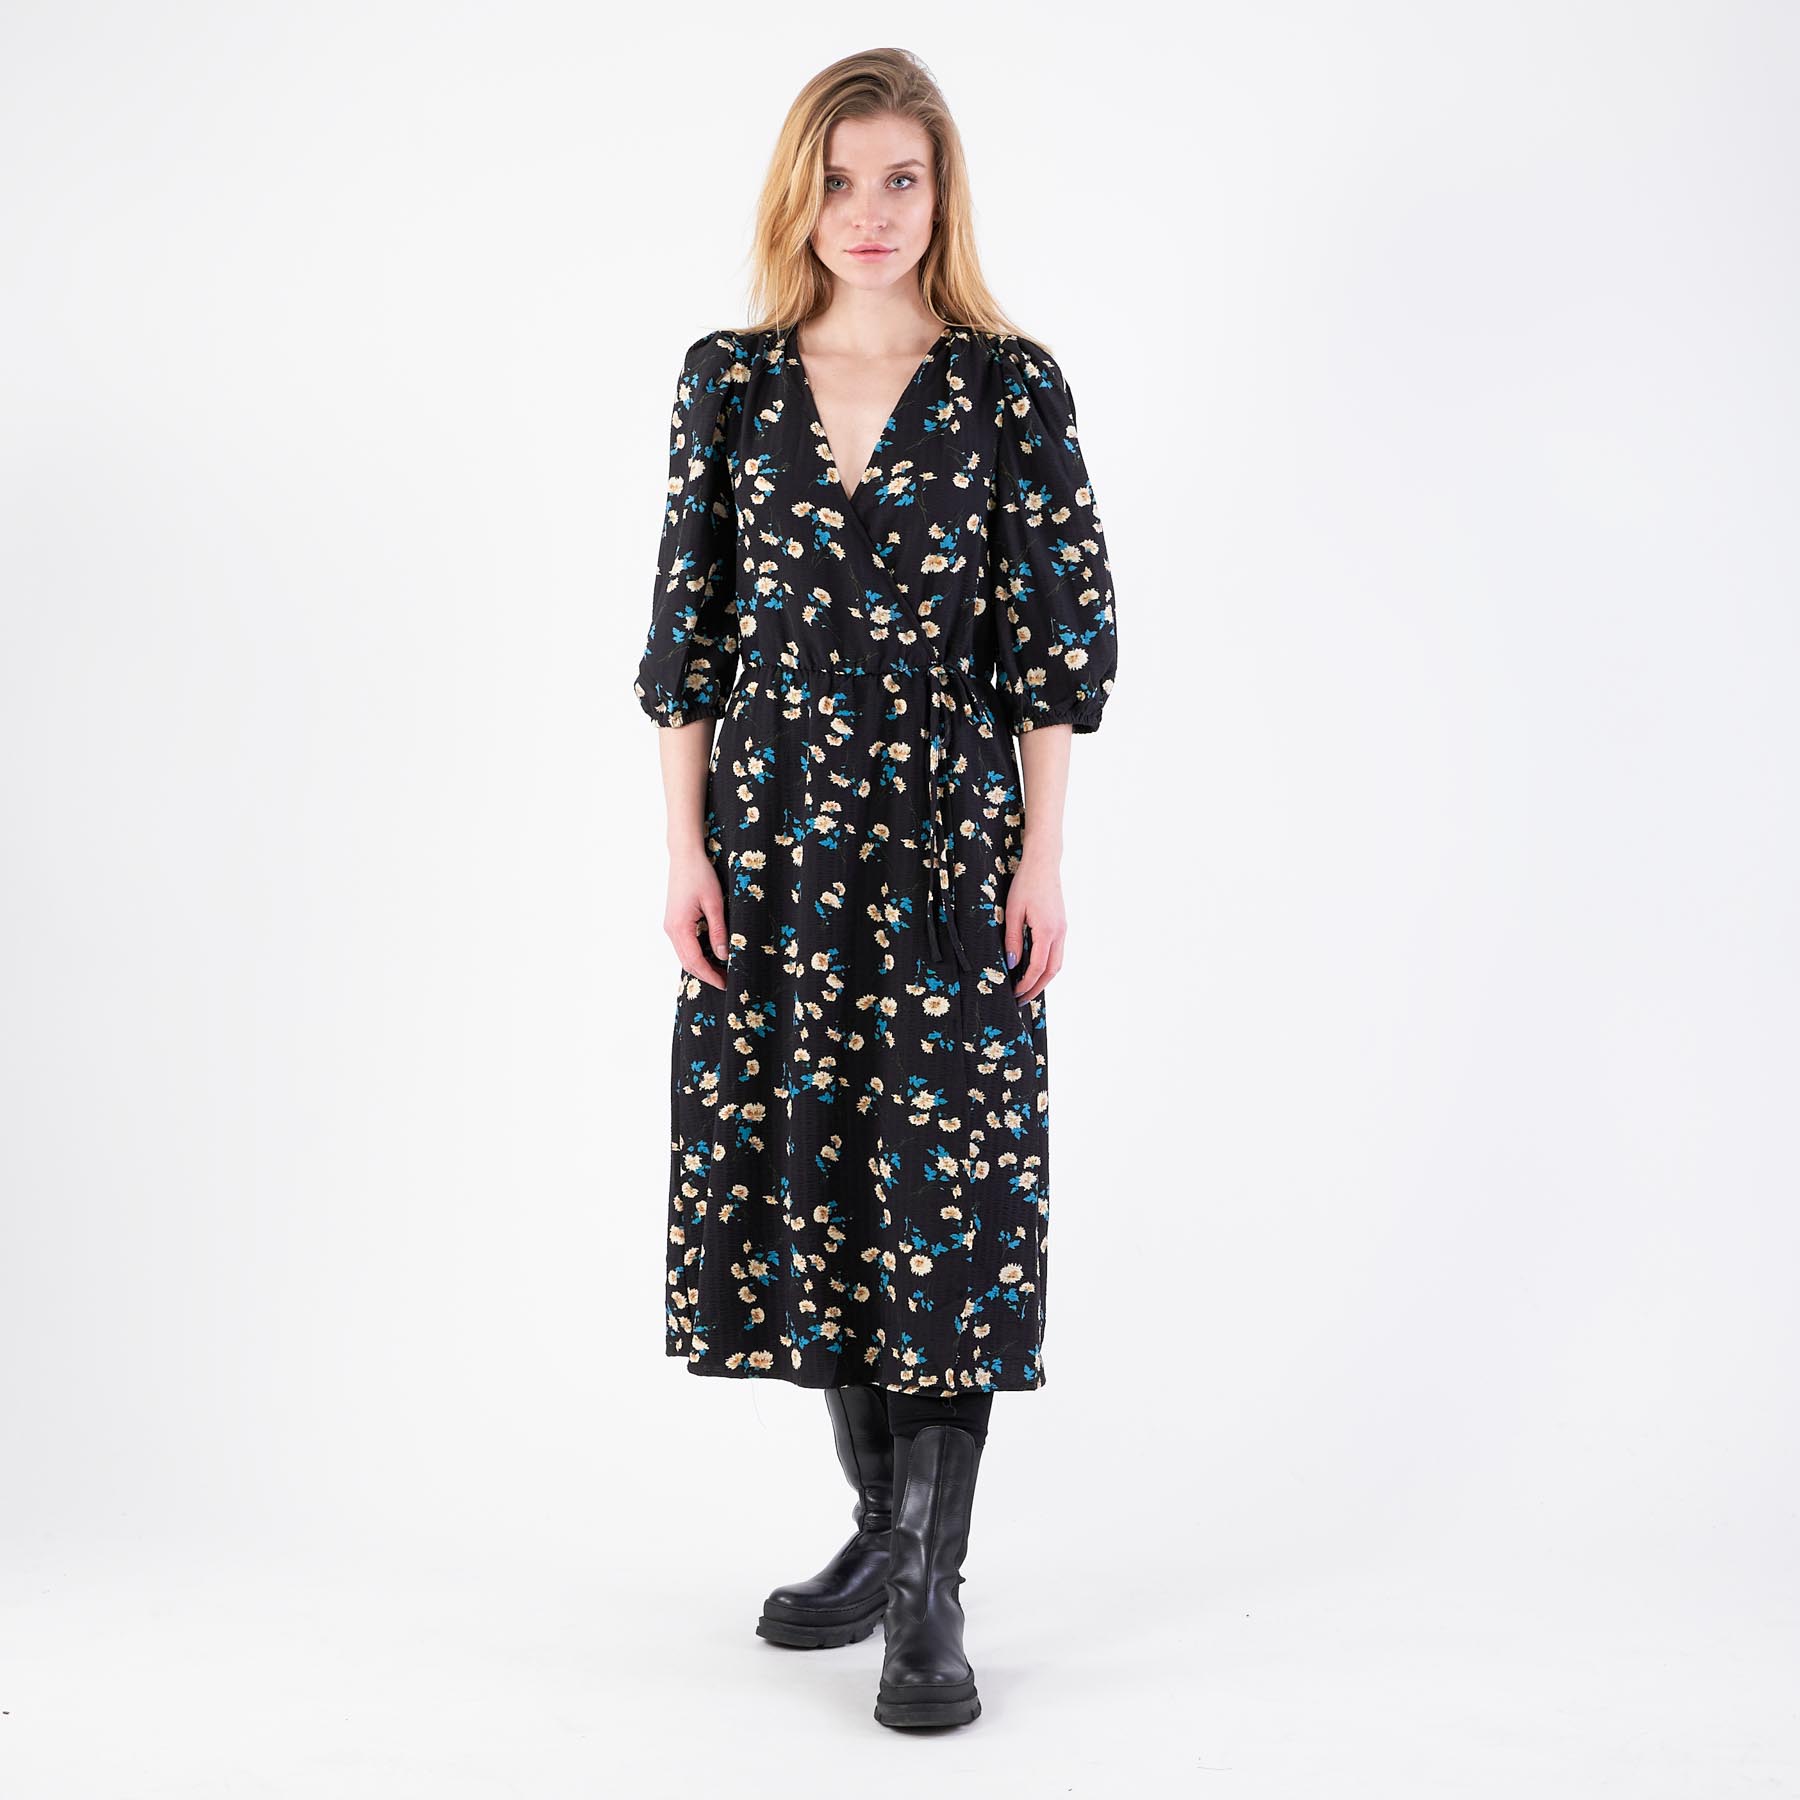 Pure friday – Purlotus print dress – Kjoler til hende – B/BLACK W. FLOWERS – M